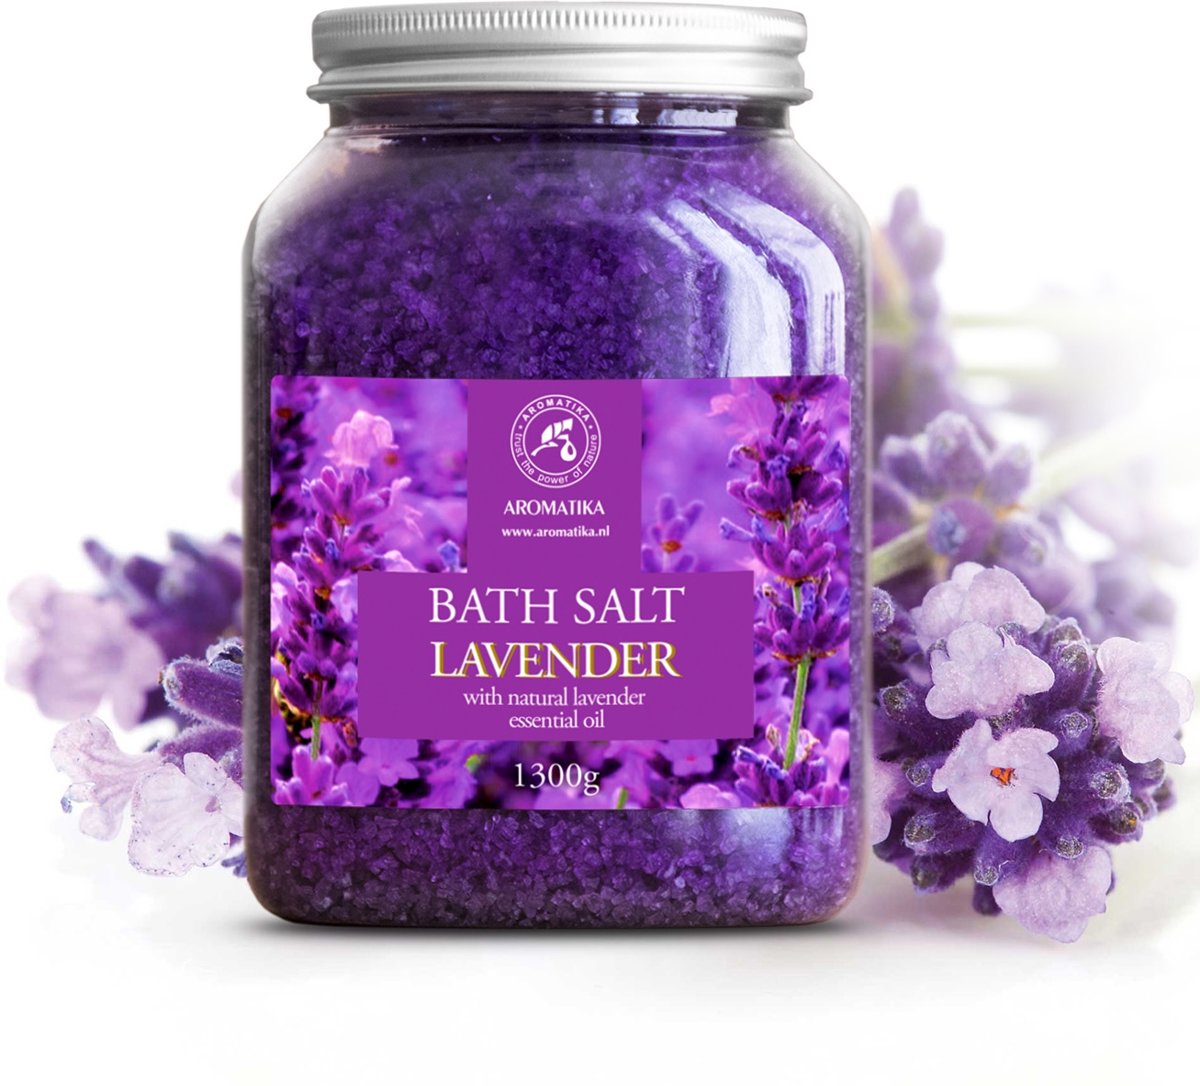 Foto van Badzout lavendel 1.3kg, tegen Acne / Droge huid / Spierpijn / vermoeidheid / goed voor Persoonlijke verzorging / Huidverzorging / Aromatherapie / Anti - stress / bubbelbad / bad / Jacuzzi / Spa / Wellness / Ontspanning / cadeau van Aromatika